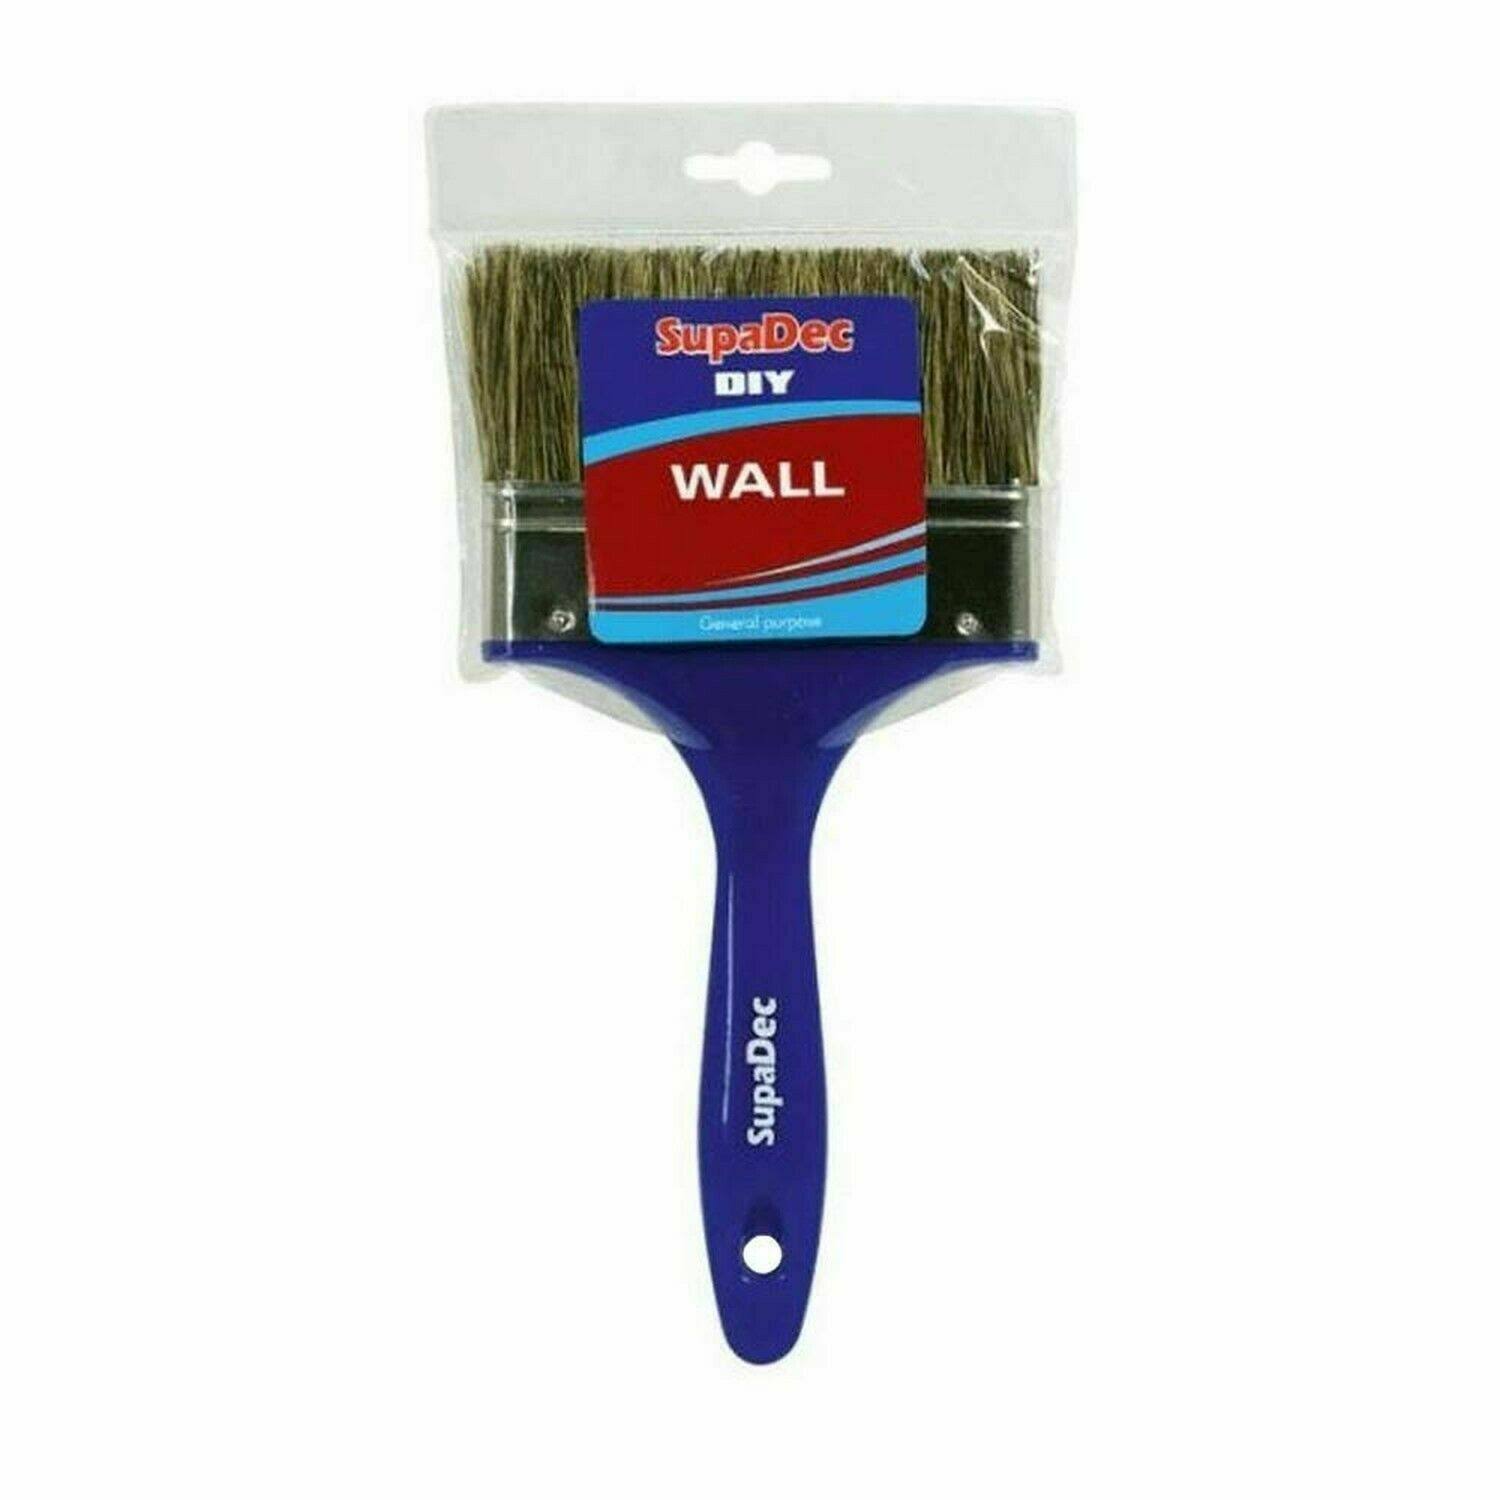 SupaDec DIY Wall Brush - 4inch - 100mm